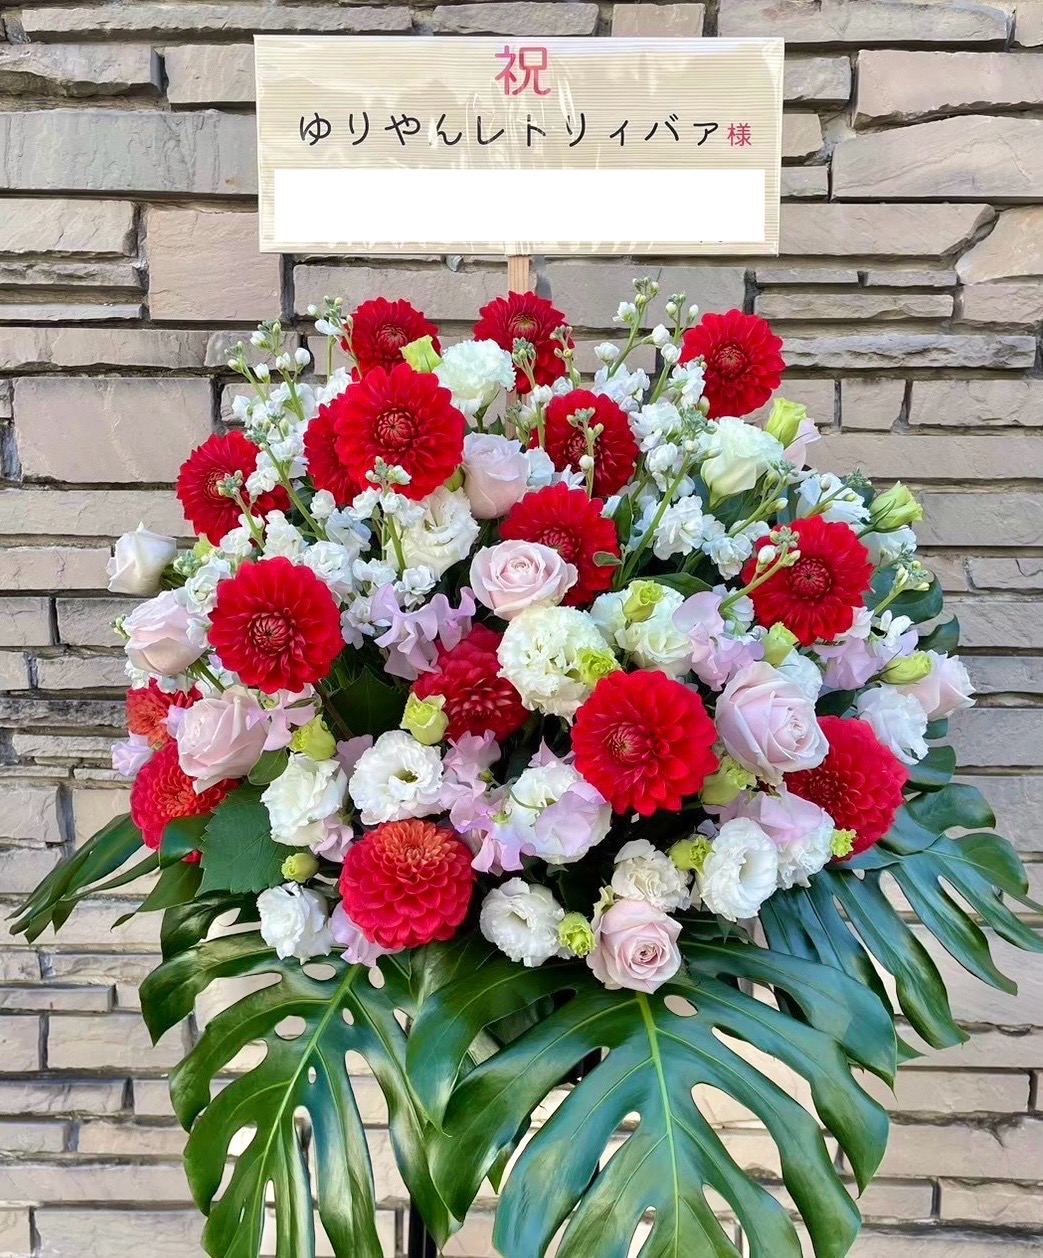 【渋谷区文化総合センター 大和田】公演祝いのスタンド花をお届け